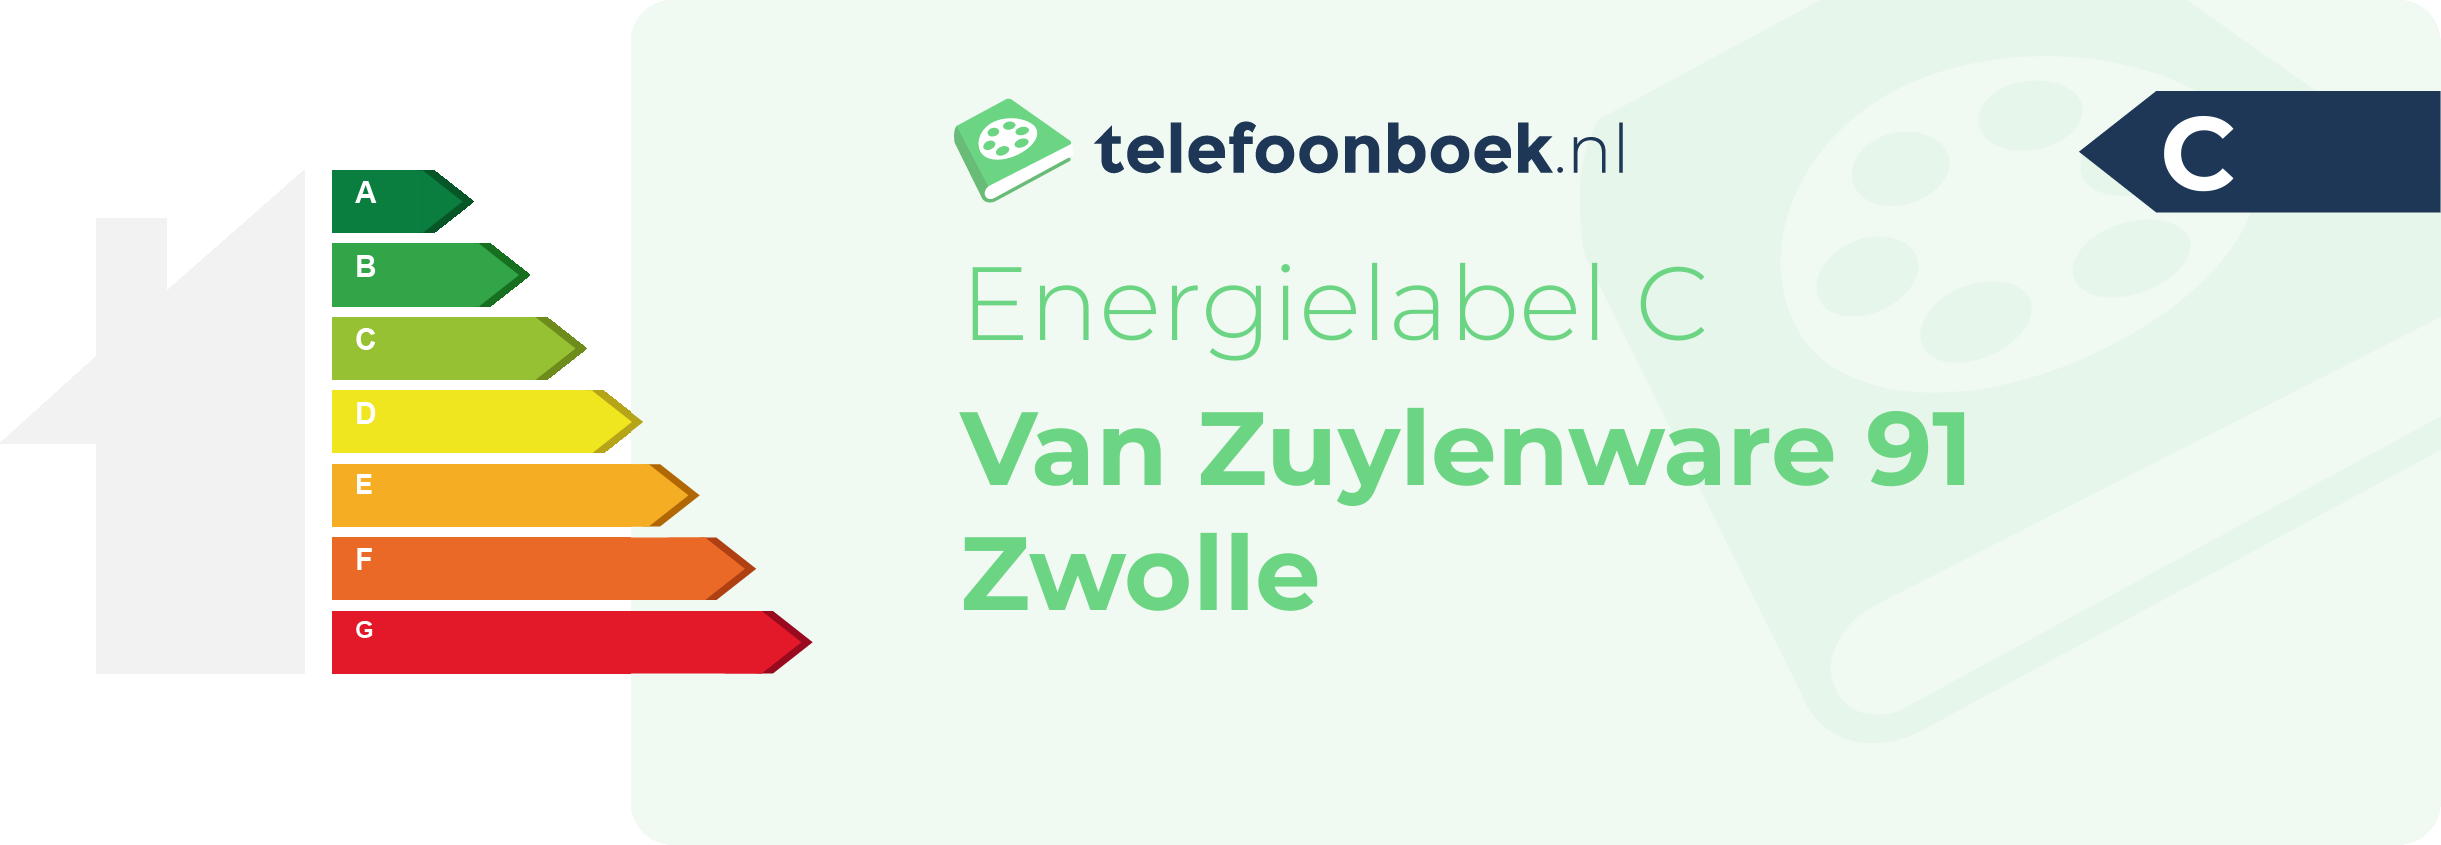 Energielabel Van Zuylenware 91 Zwolle